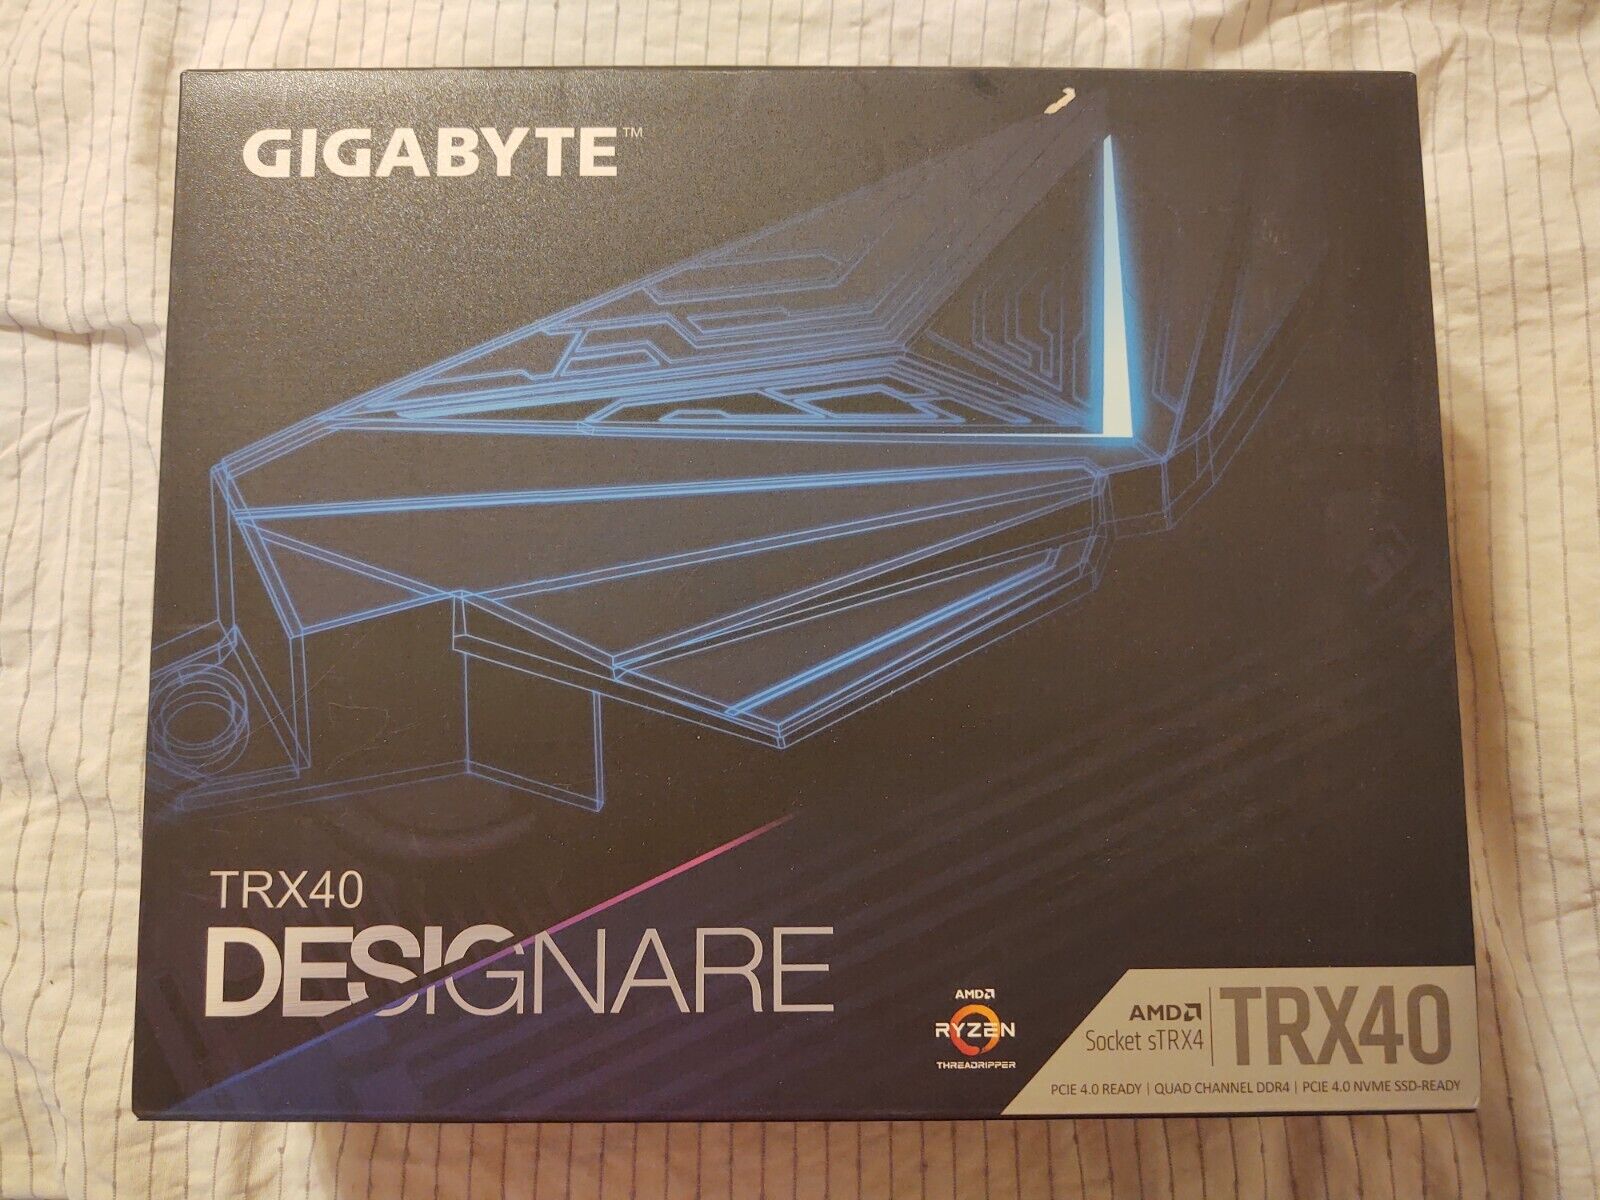 GIGABYTE TRX40 DESIGNARE AMD Motherboard (Revision 1.0)